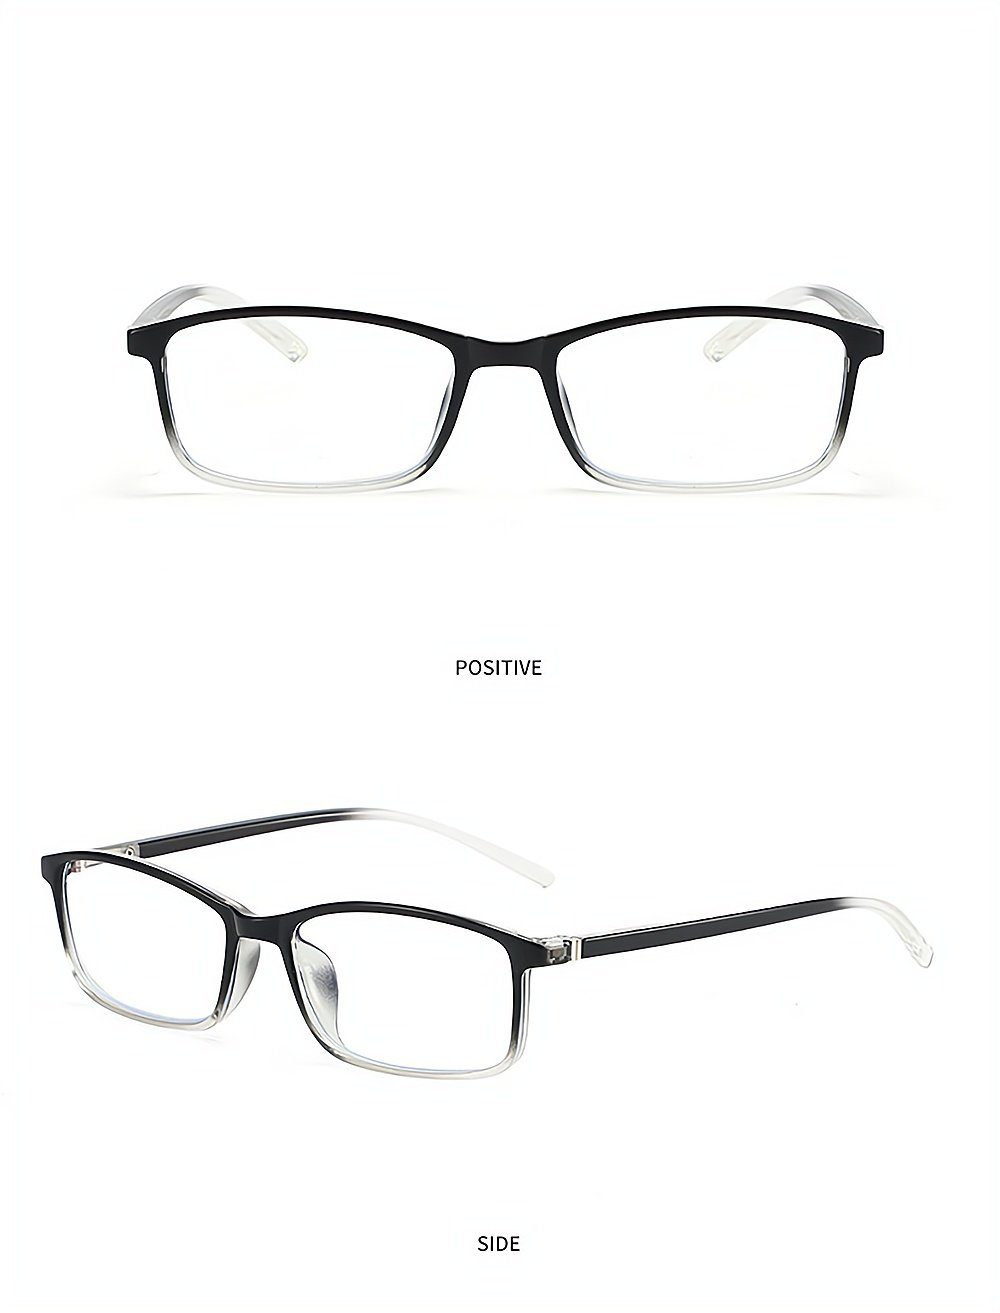 PACIEA Lesebrille Mode bedruckte weiß Rahmen anti presbyopische blaue Gläser